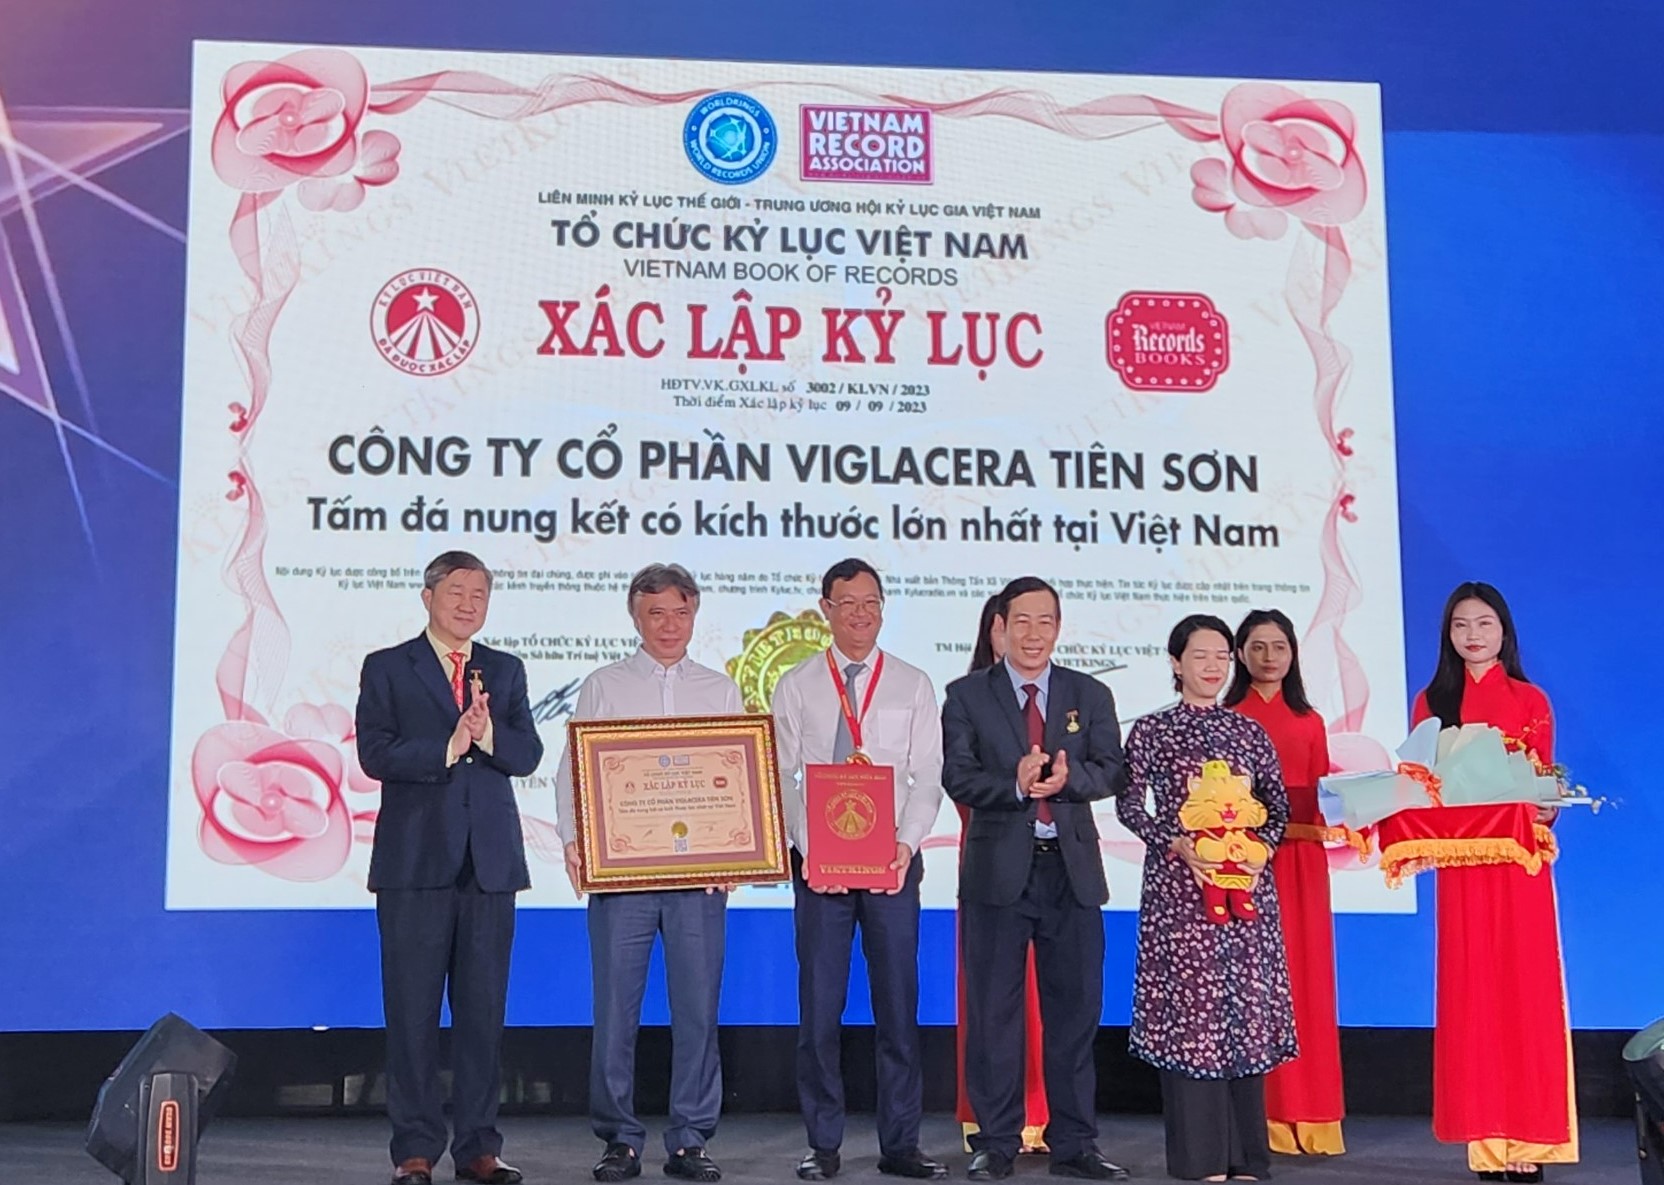 Đại diện tổ chức Kỷ lục Việt Nam trao giấy chứng nhận kỷ lục “Tấm đá nung kết có kích thước lớn nhất Việt Nam” cho đại diện Viglacera.